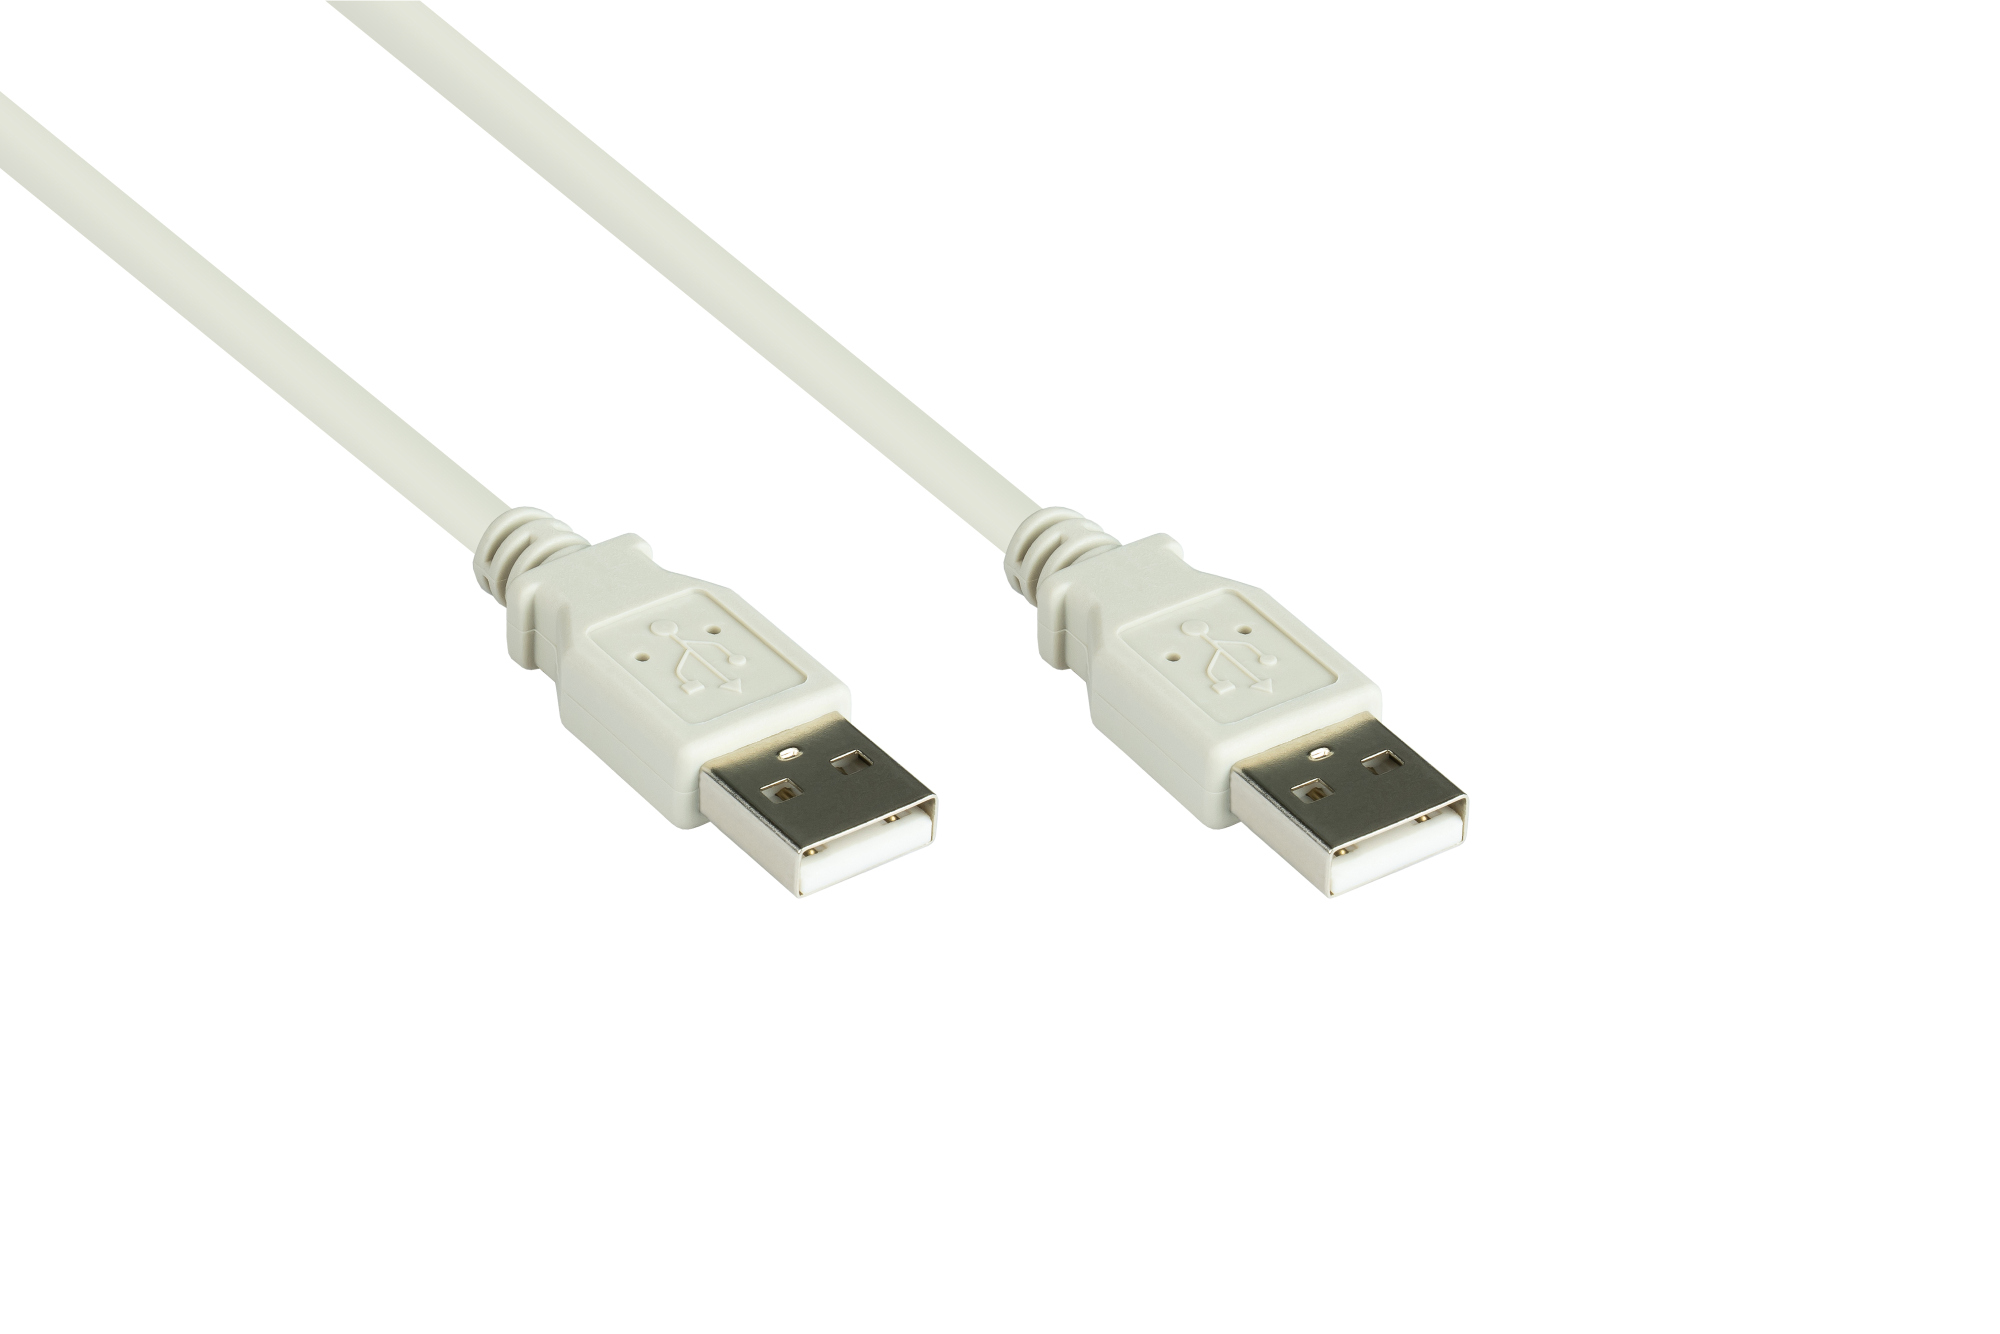 Anschlusskabel USB 2.0 Stecker A an Stecker A, grau, 1m